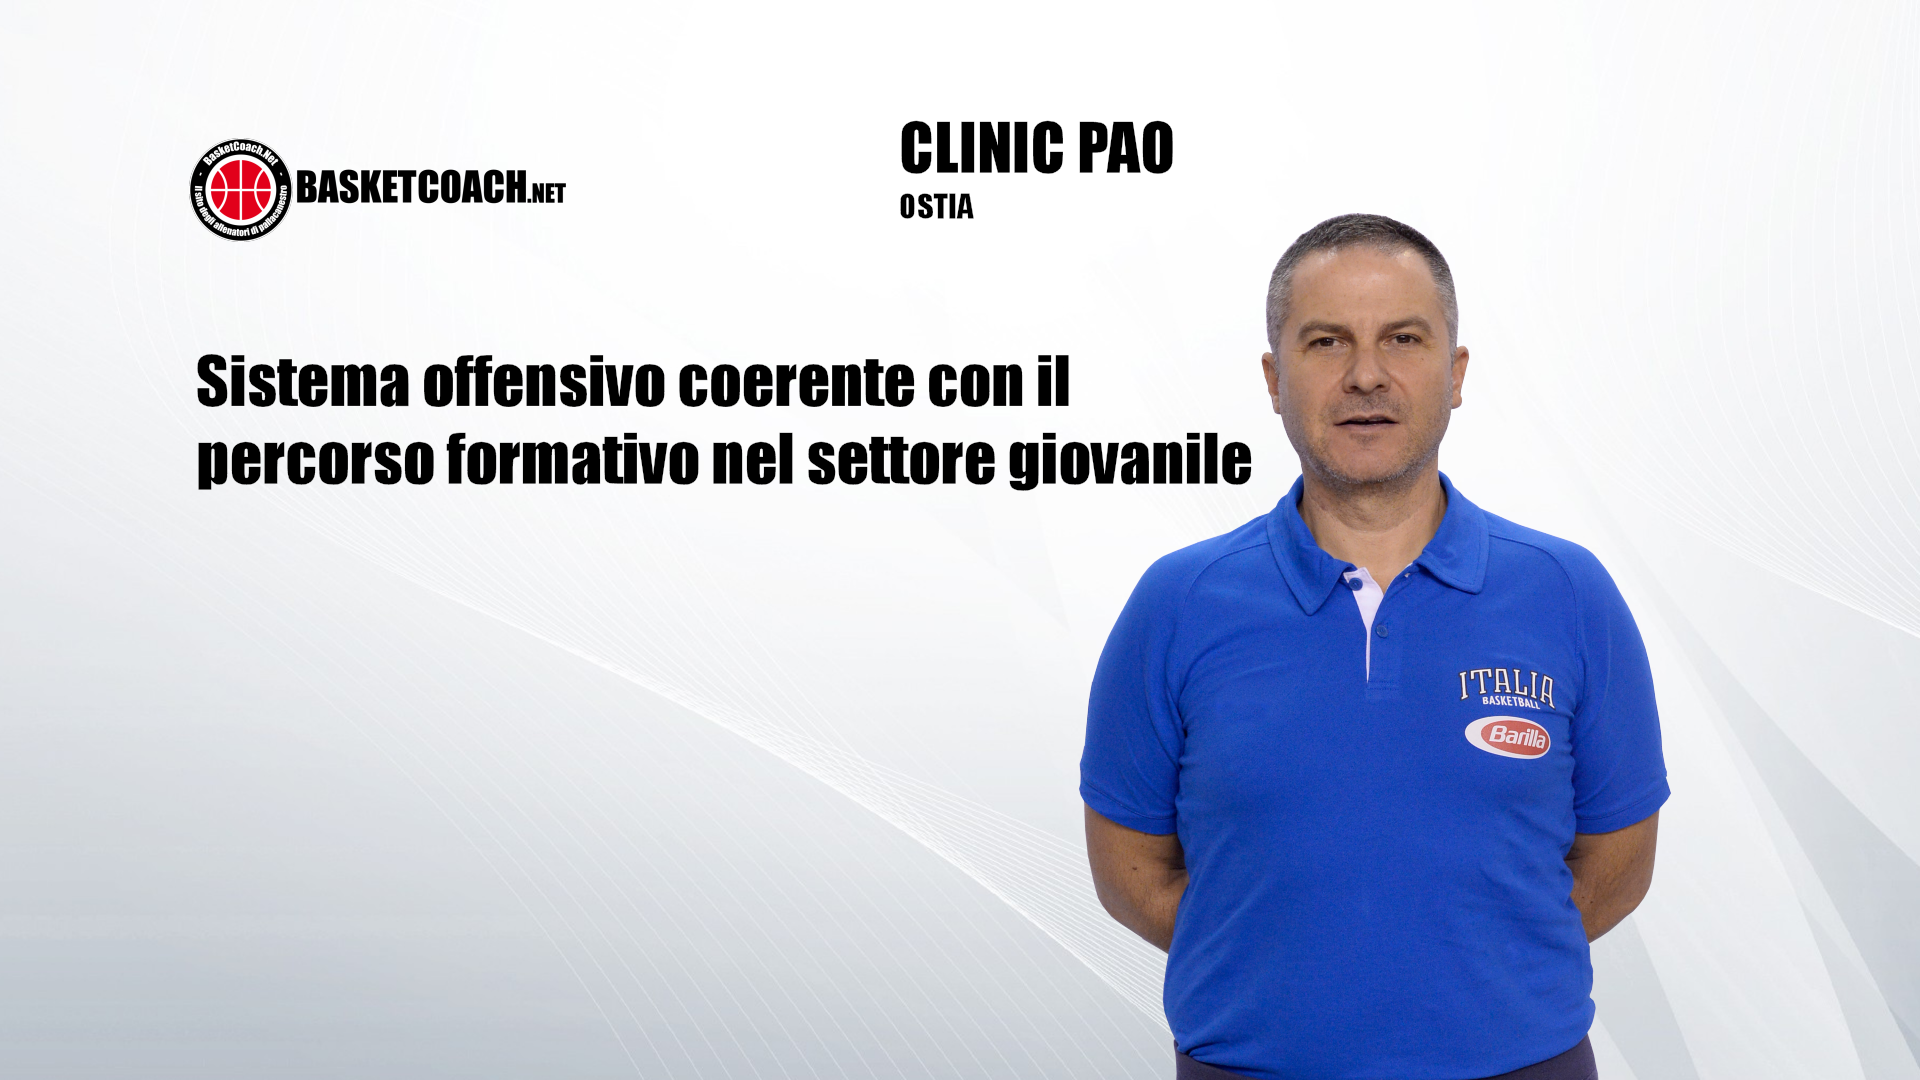 <p>Antonio Bocchino - Sistema offensivo coerente con il percorso formativo nel settore giovanile</p>
